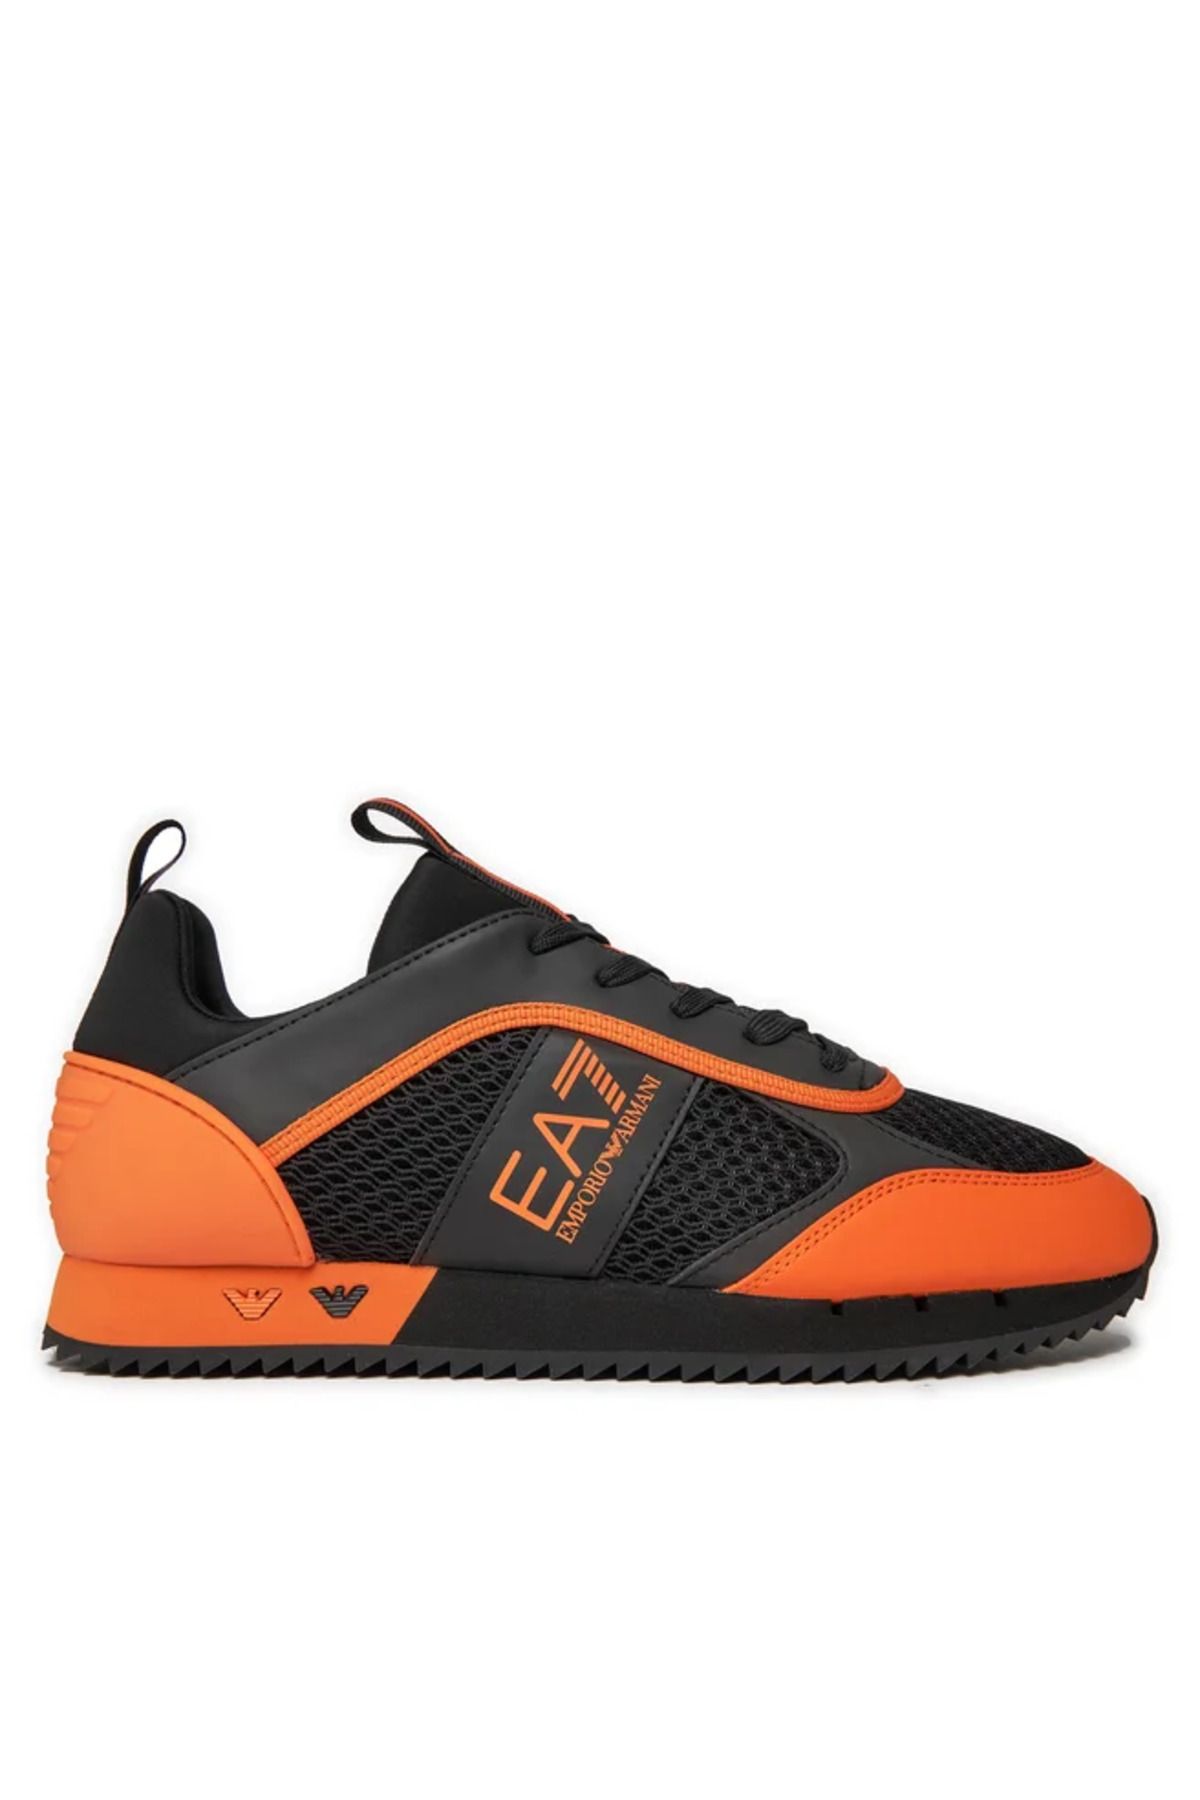 EA7 UNISEX Fileli Şerit Logolu Bağıcıklı Siyah-Turuncu Sneaker X8X027 XK050-T669